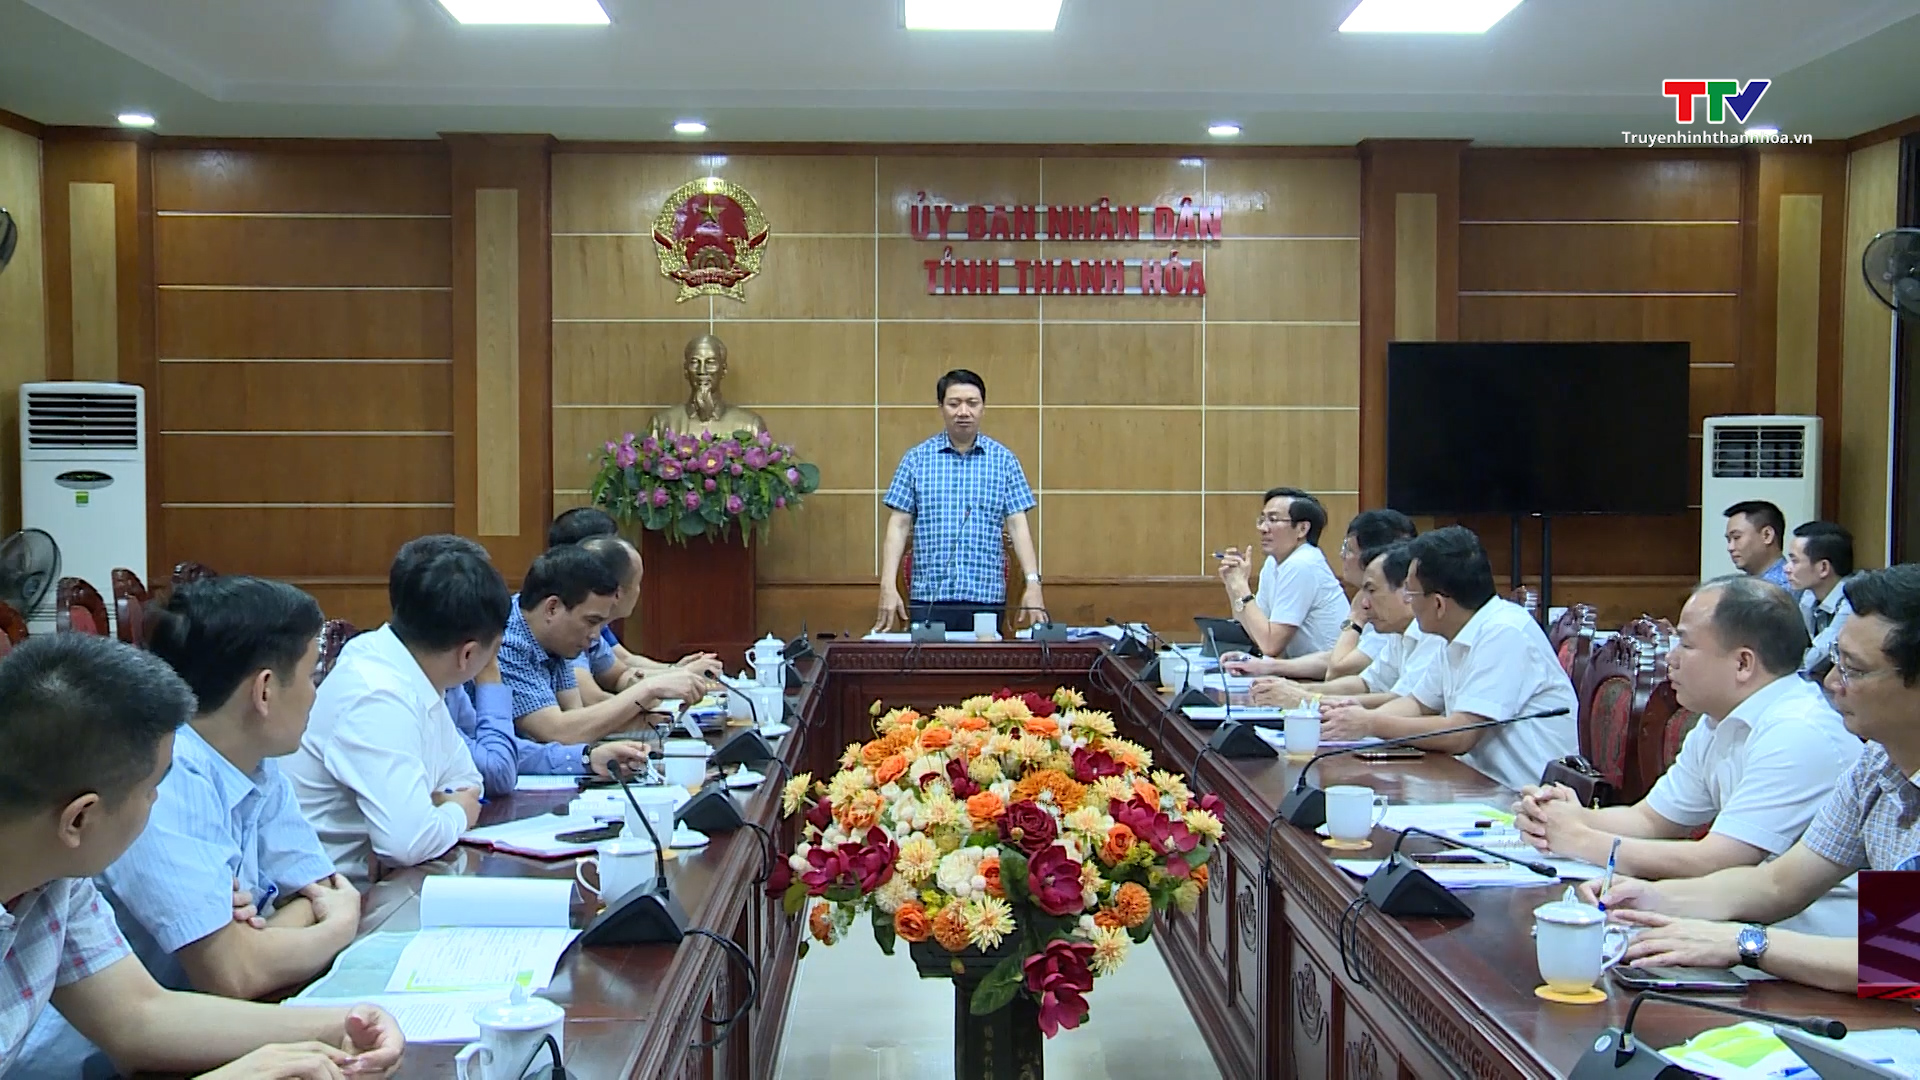 Phương án cấp nước từ sông Hoạt phục vụ cho sản xuất  của Nhà máy xi măng Long Sơn - Ảnh 3.